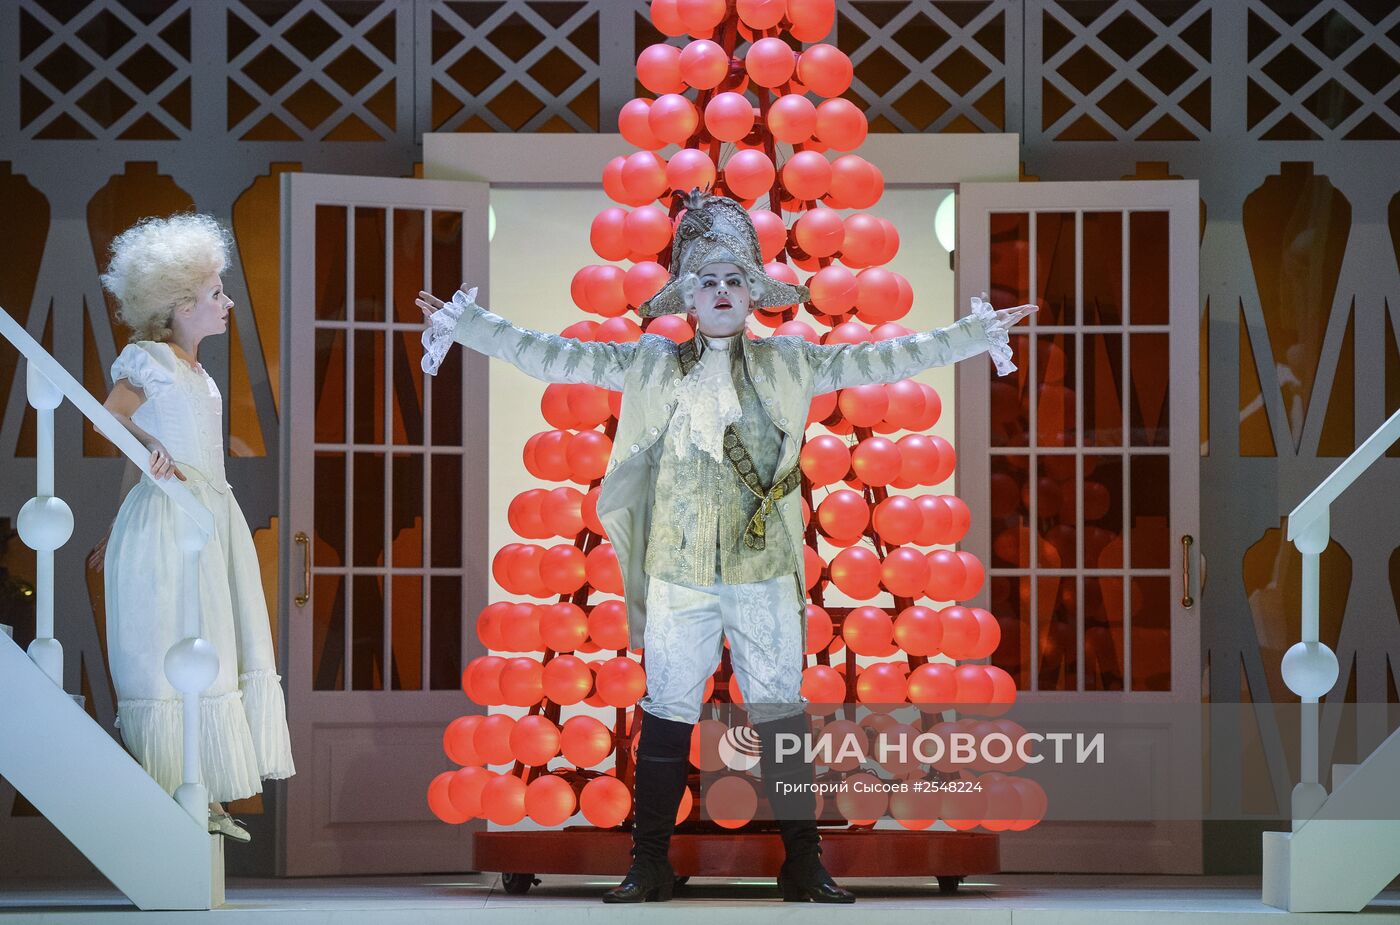 Генеральный прогон "Щелкунчик. Опера" на музыку балета П.И. Чайковского